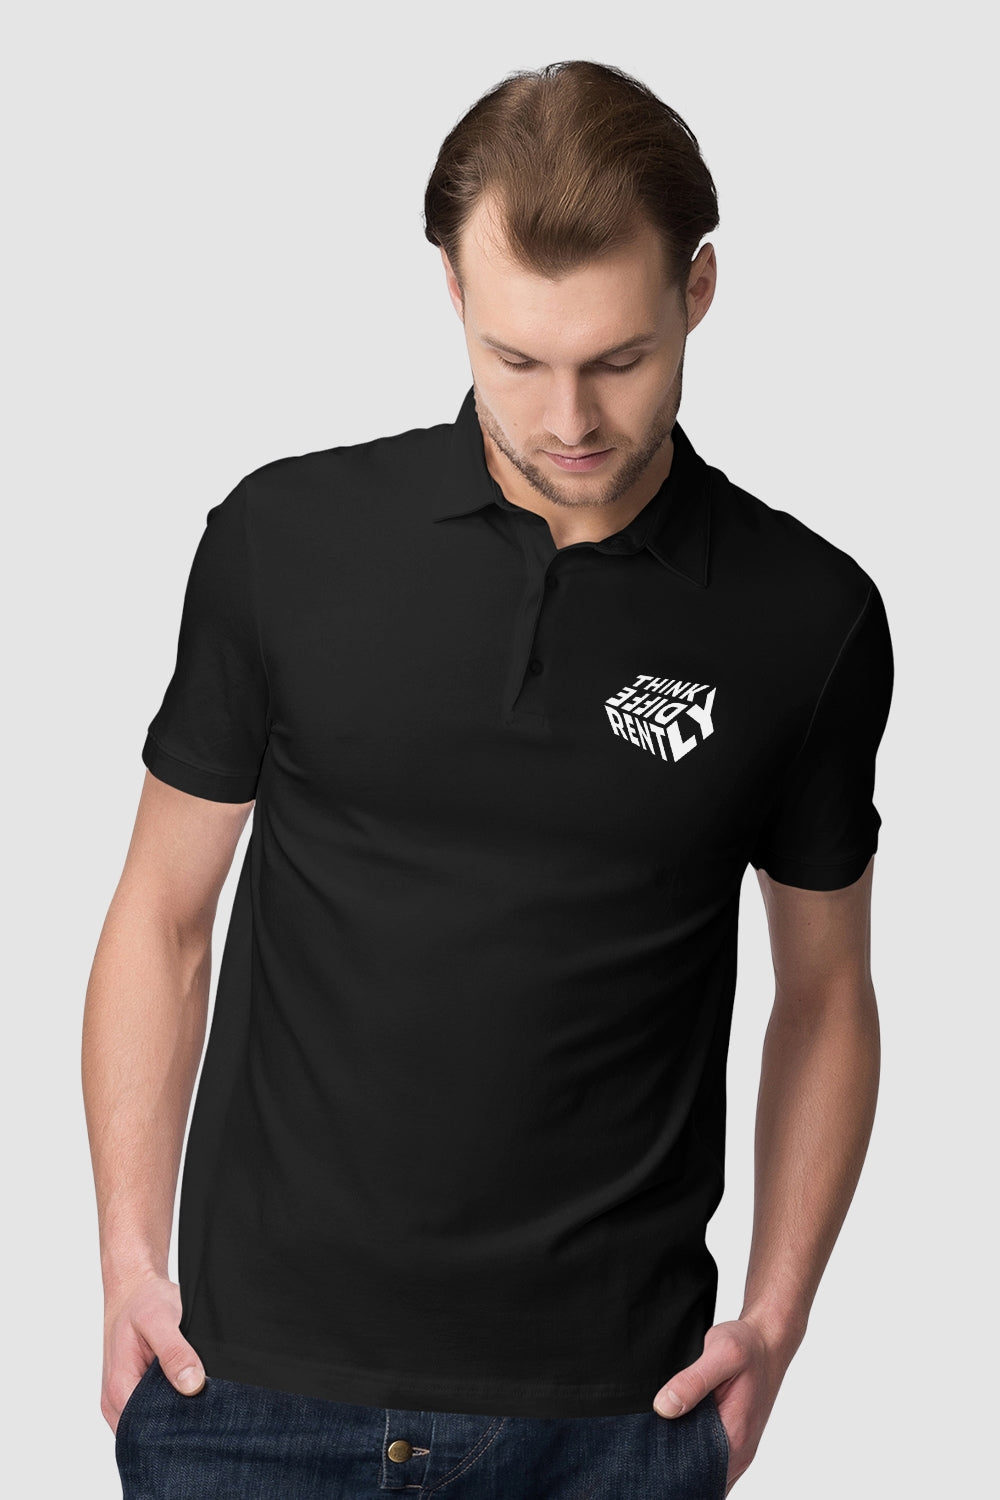 Think Differently Pocket Printed Black Polo Tshirt